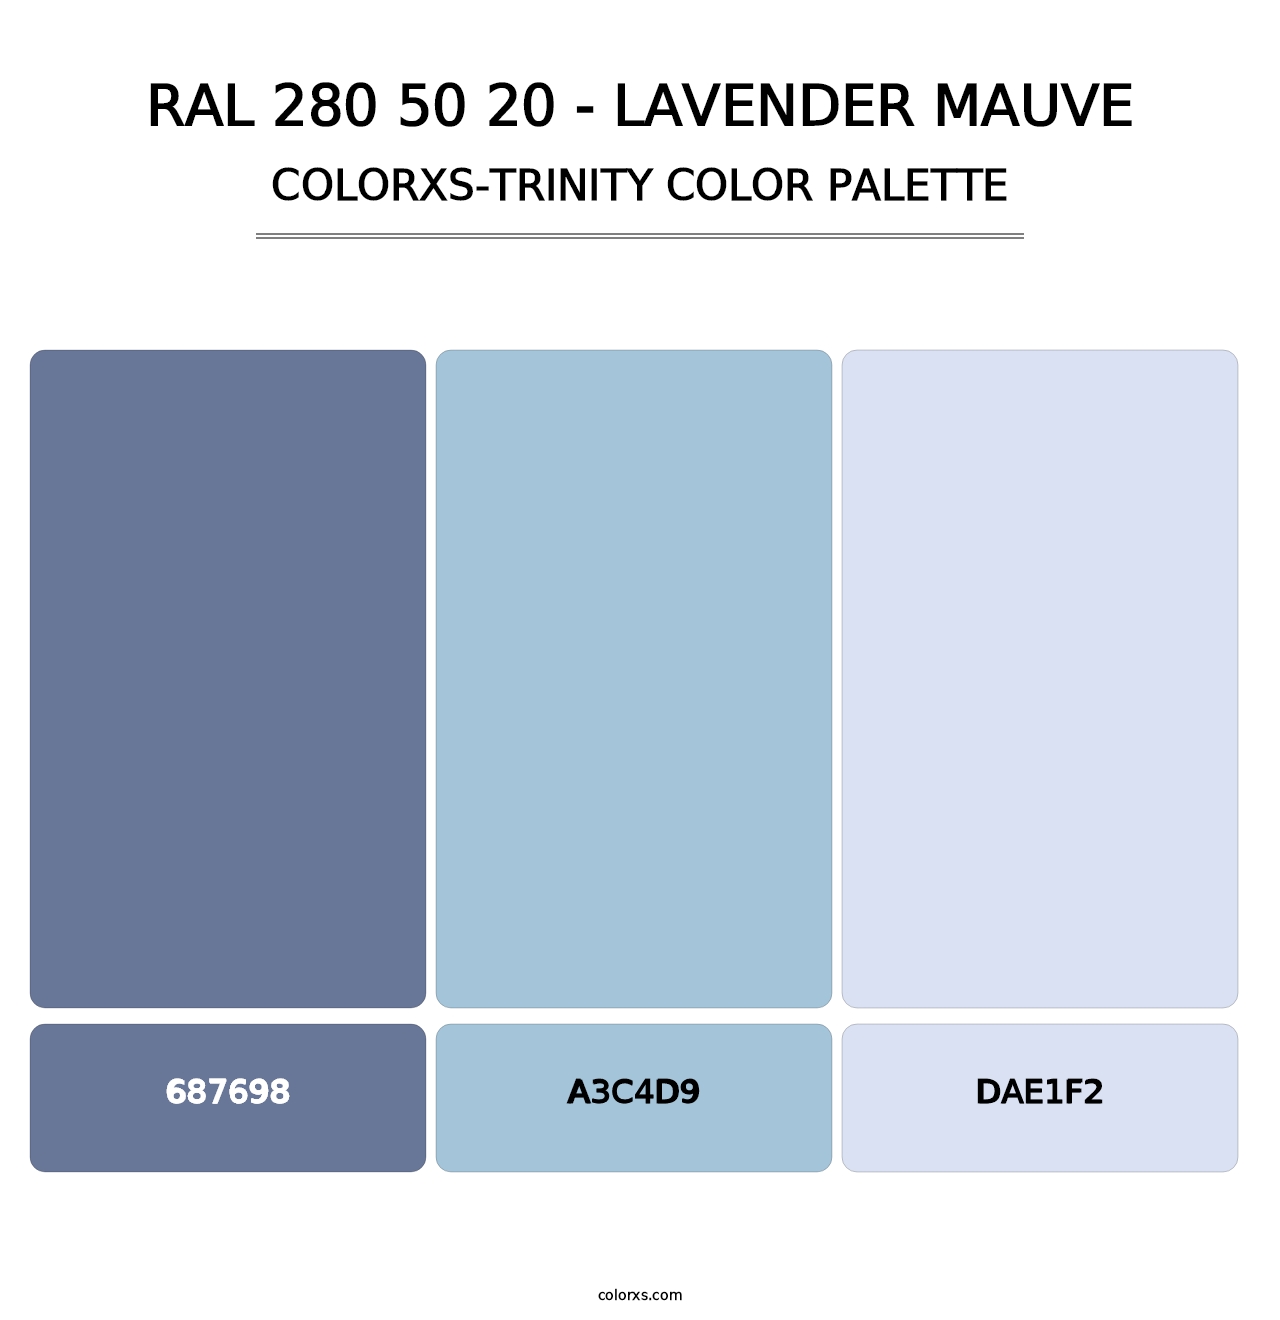 RAL 280 50 20 - Lavender Mauve - Colorxs Trinity Palette